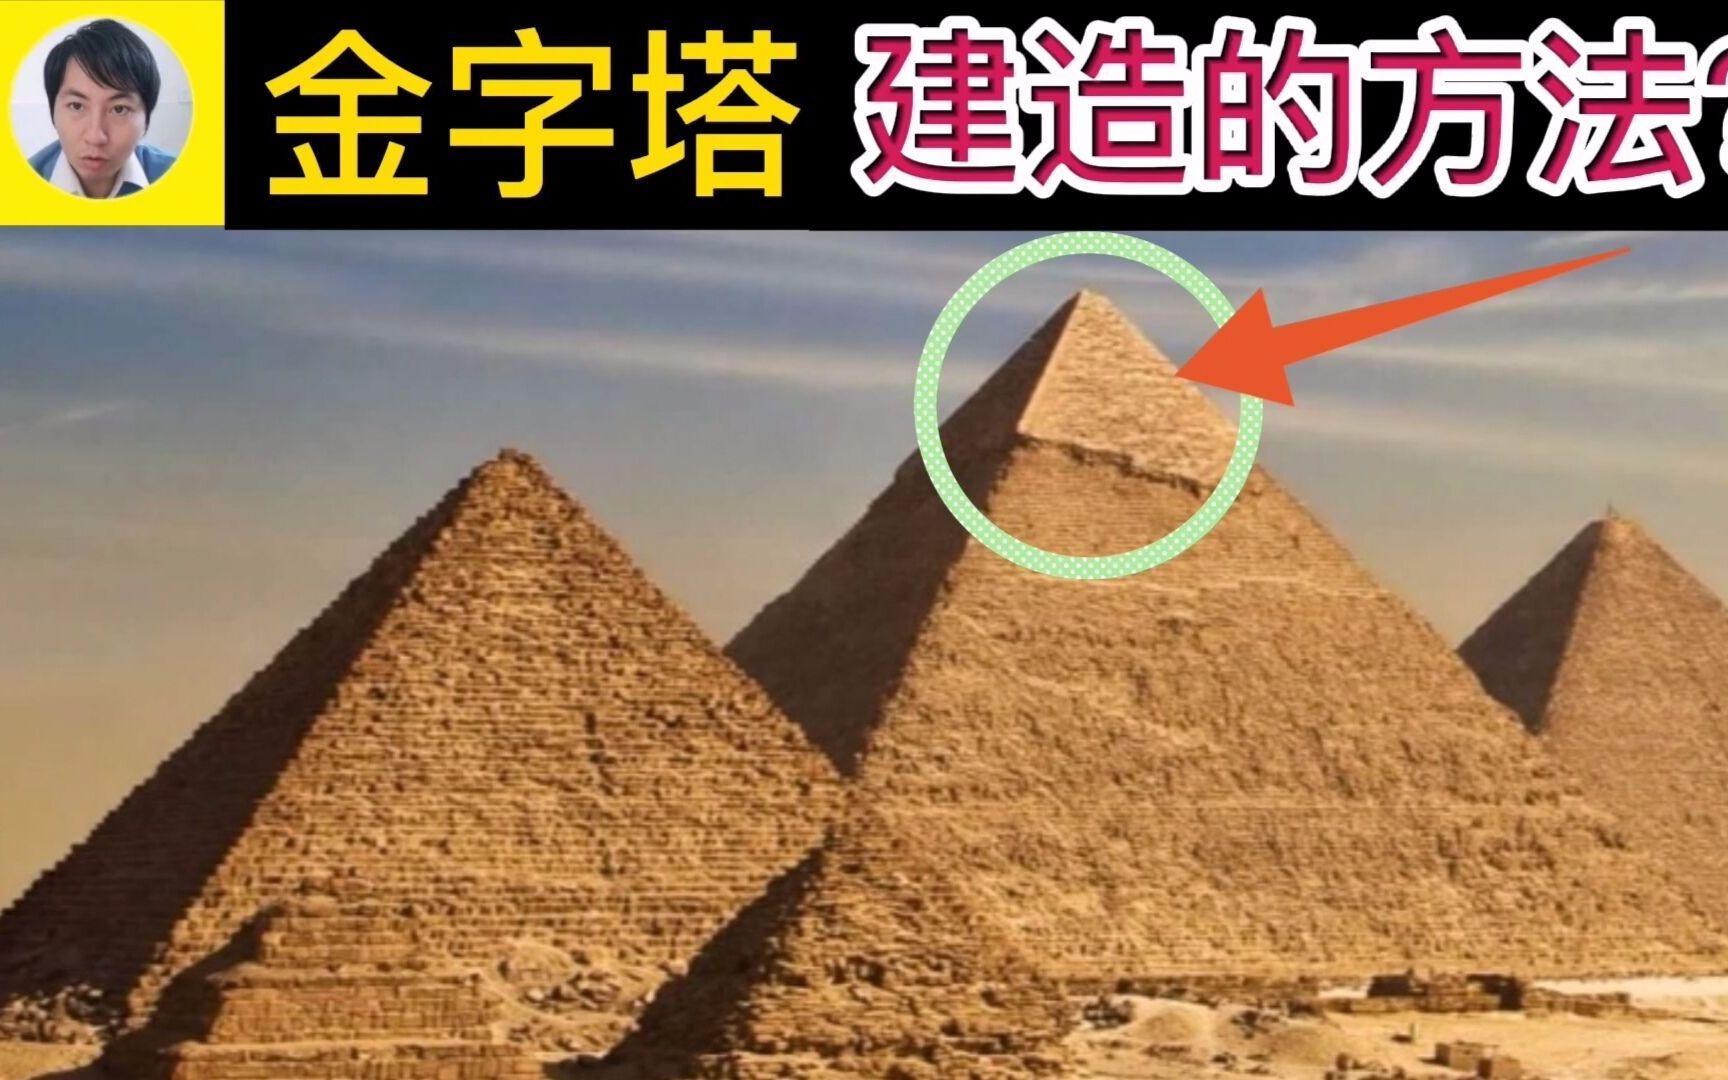 金字塔秘密不是外星人手笔也不是上一代文明遗迹